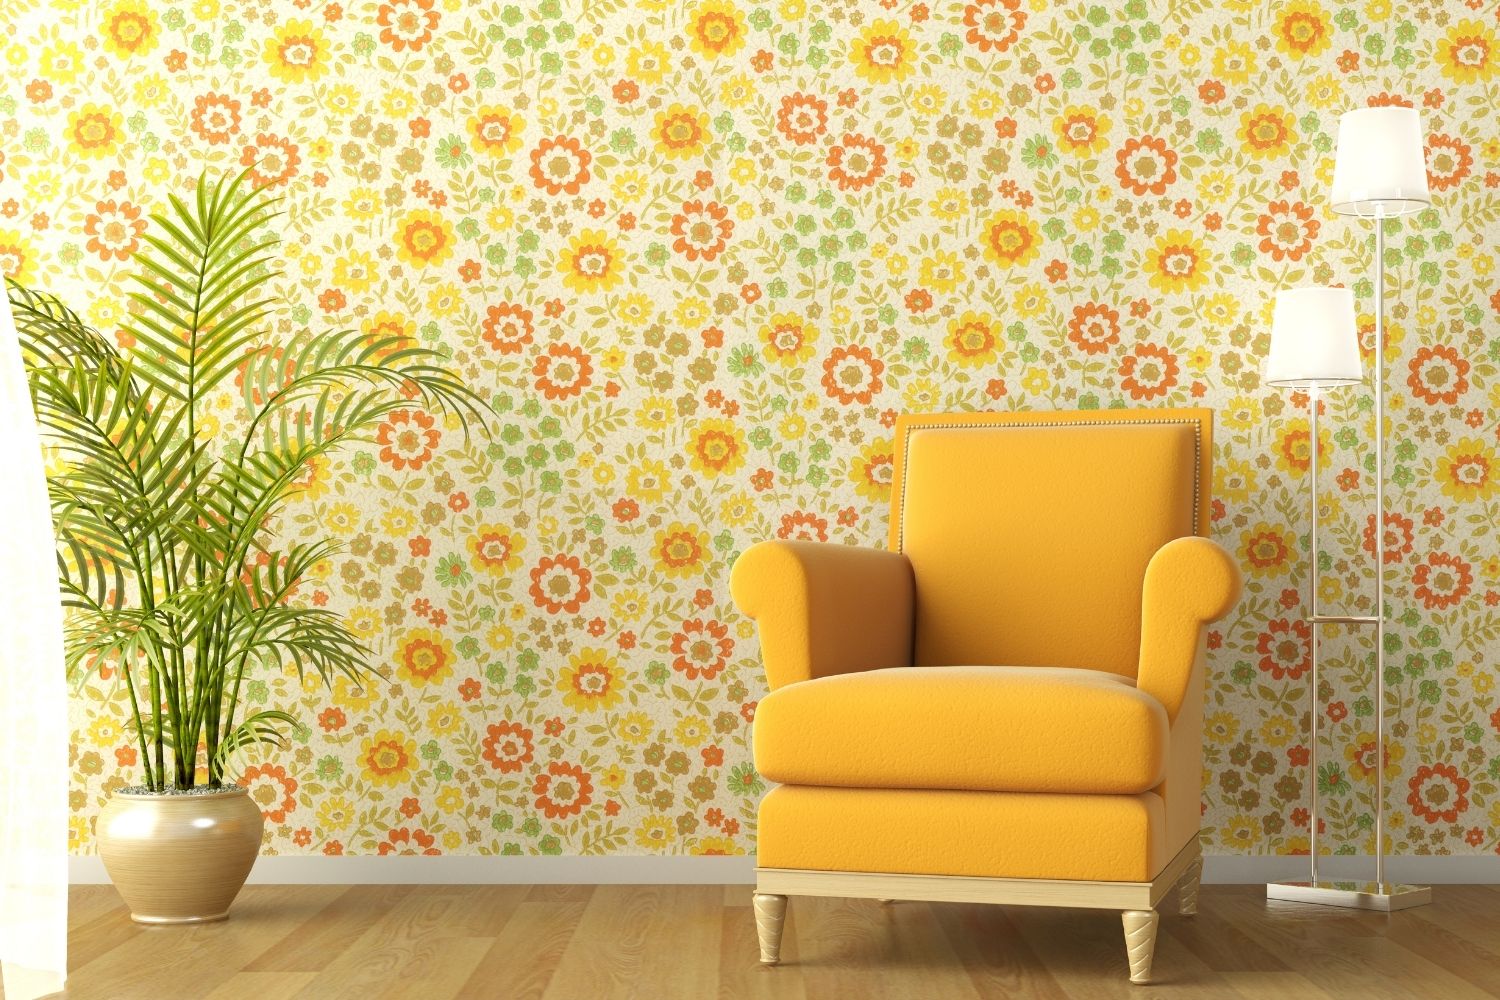 choosing wallpaper for living room